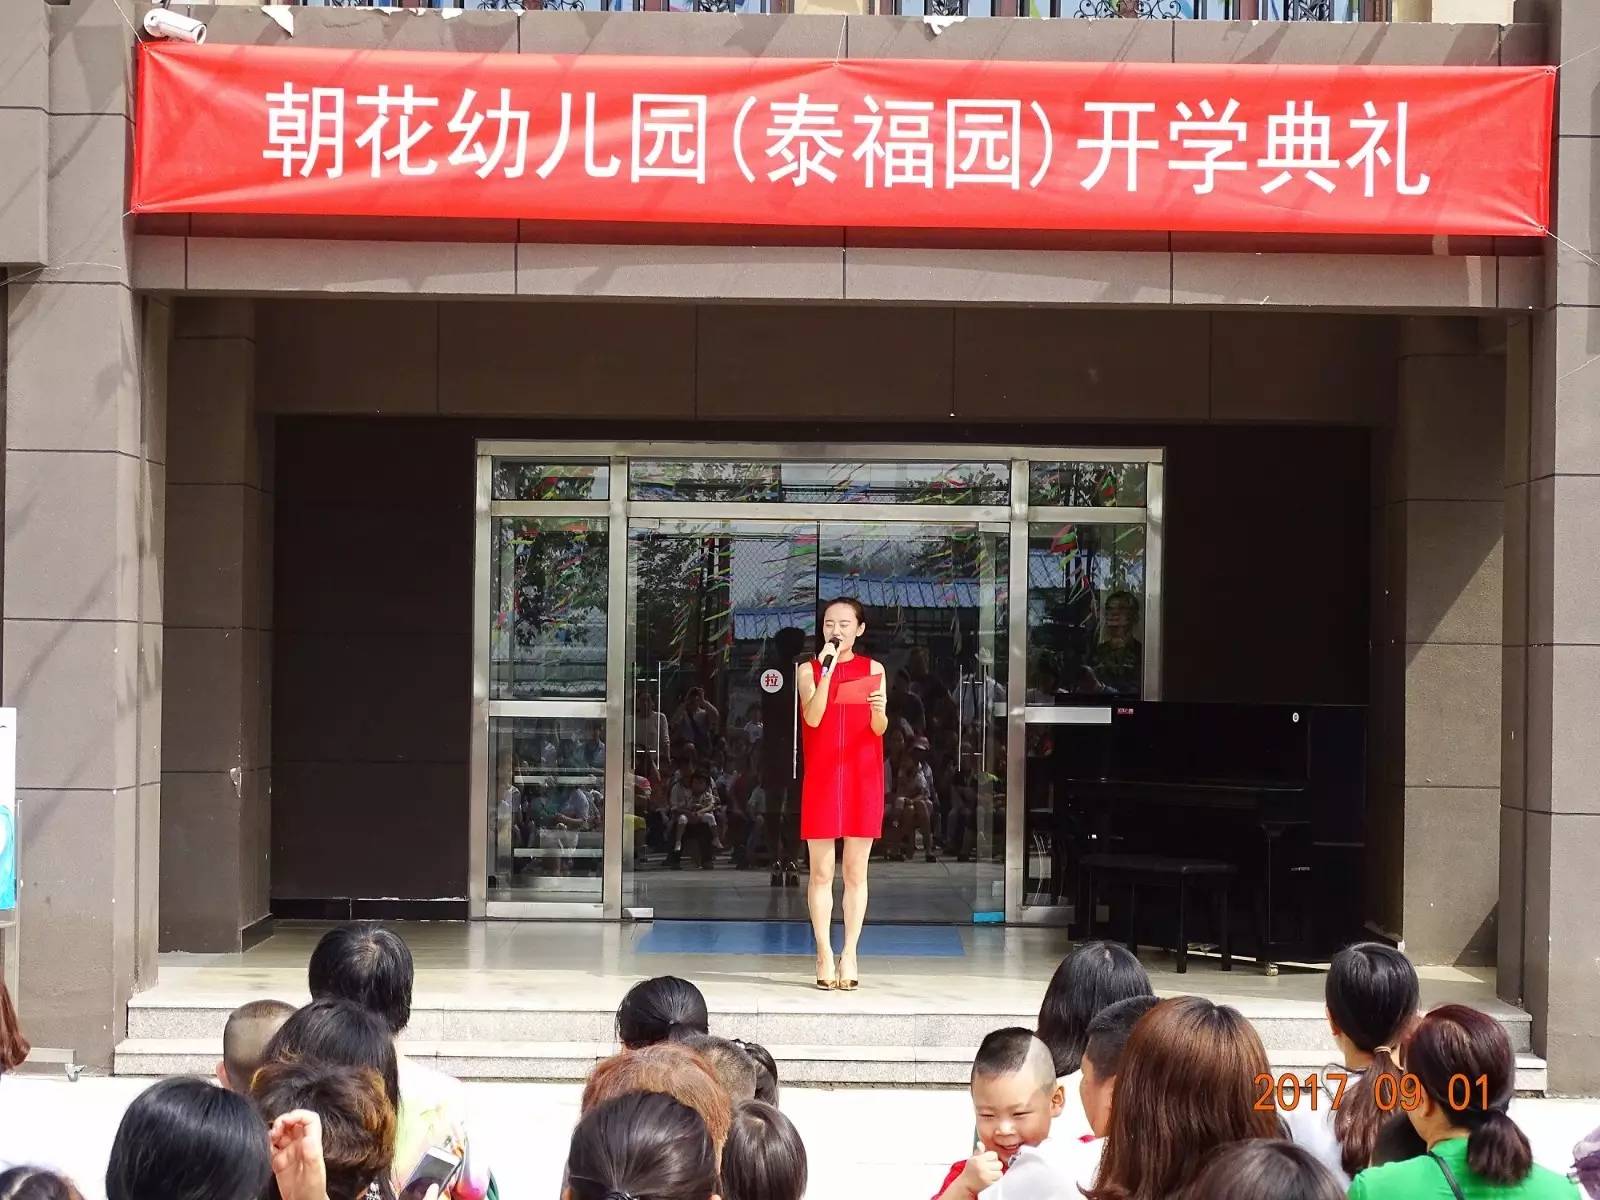 热烈庆祝北京市朝阳区朝花幼儿园第十八所分园泰福园顺利开园